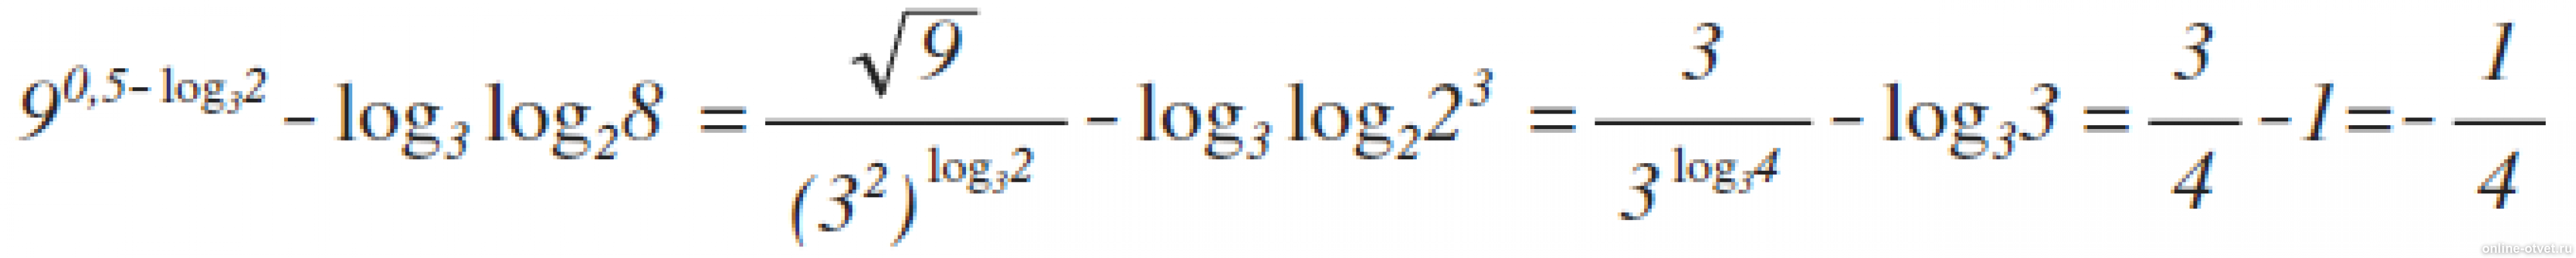 3 в степени 2 log. 9 В степени 0.5 log 3 2 log3. Лог x по основанию корень из 3. Log 25 по основанию корень из 2. Log2 log2 корень 4 степени из 2.